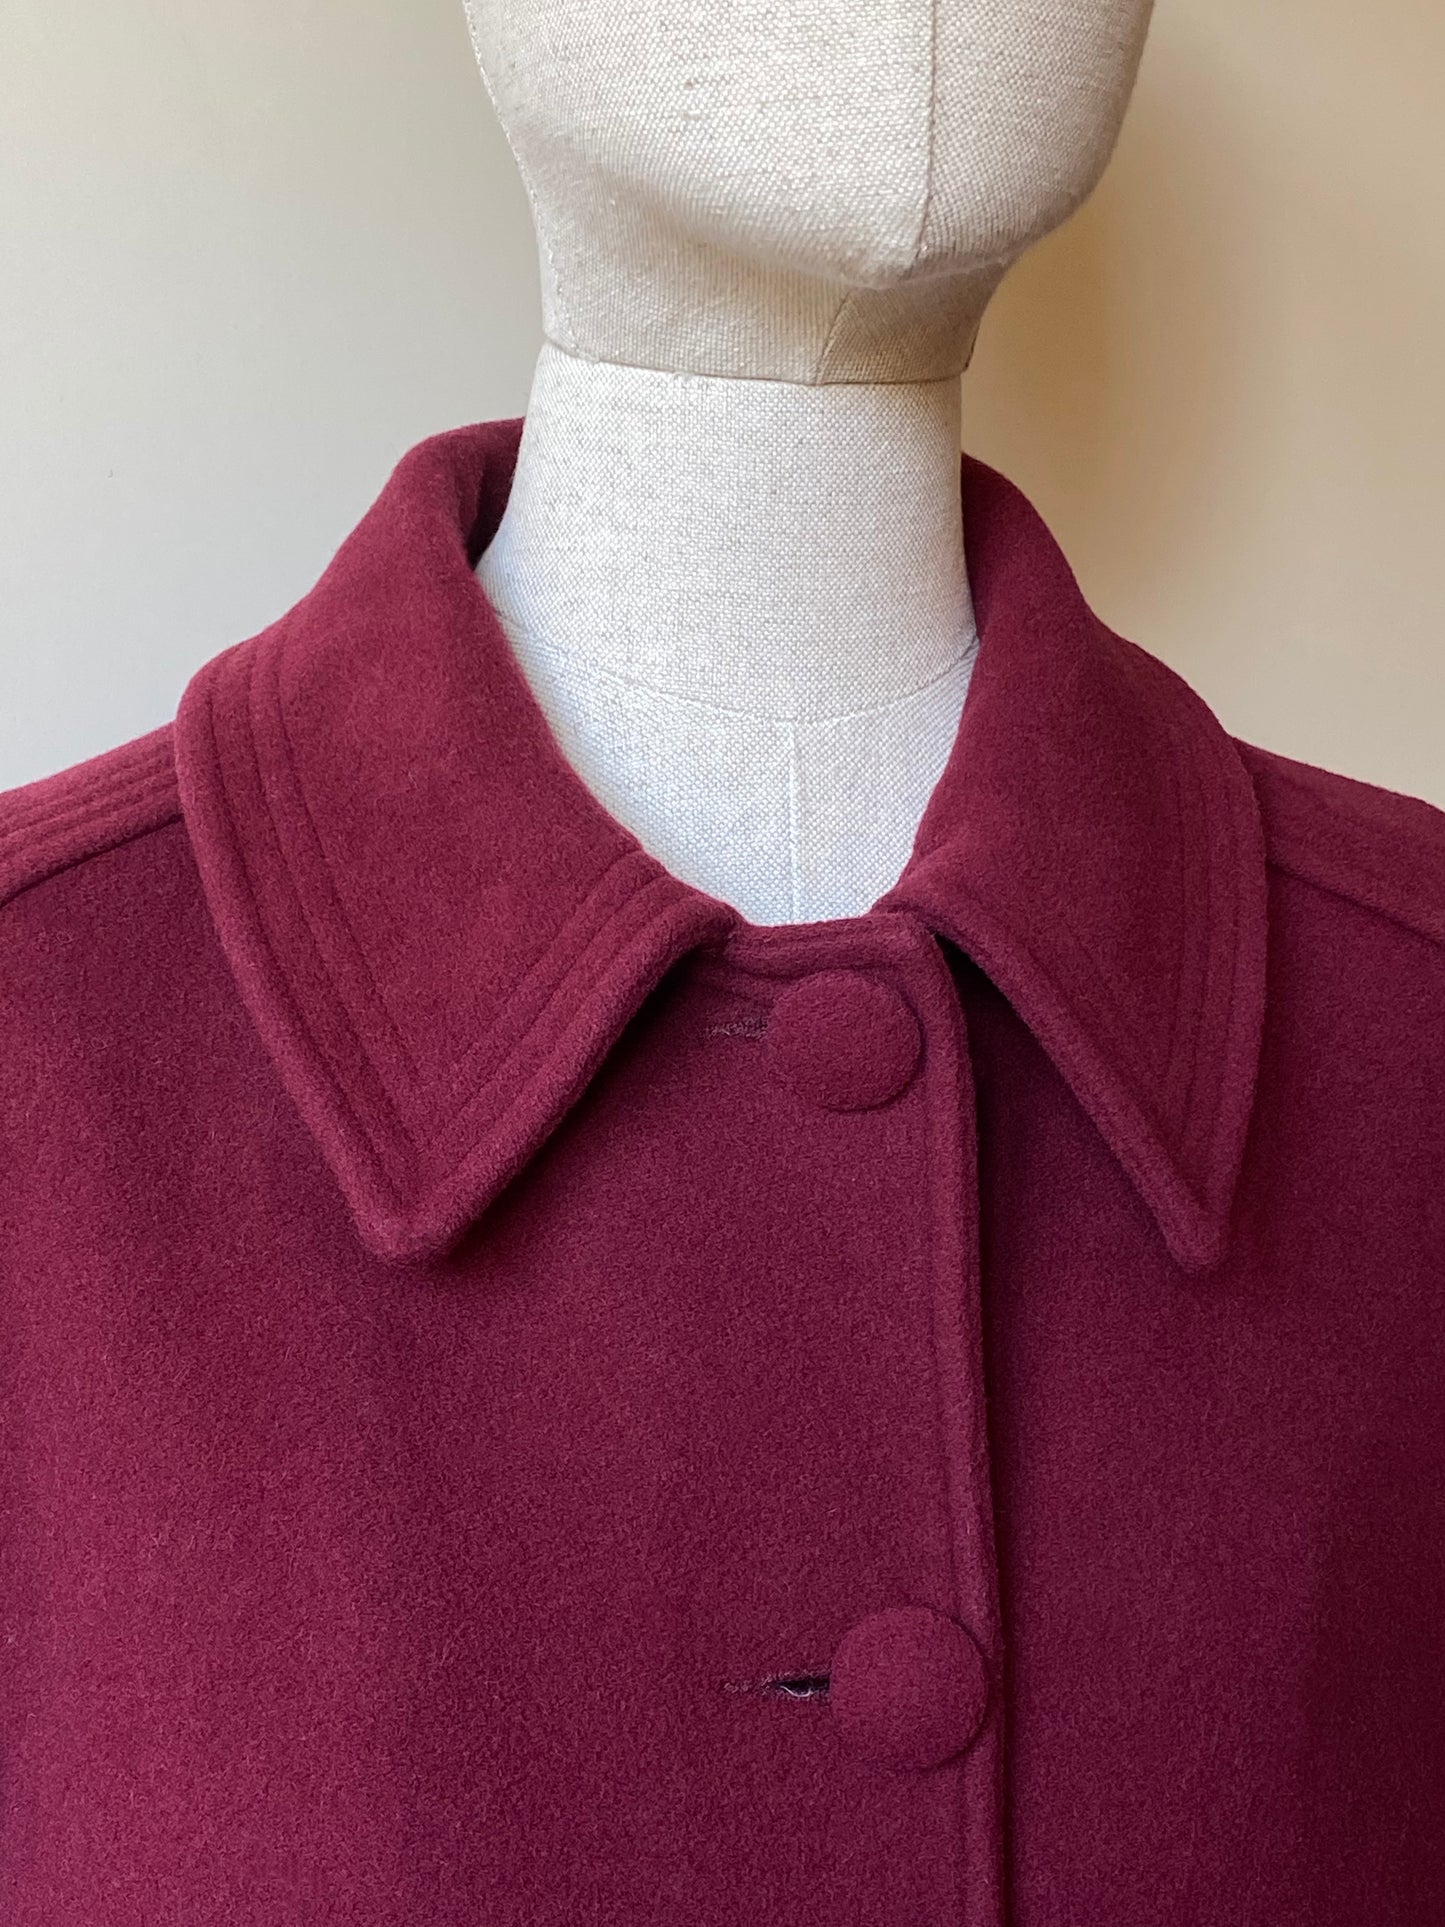 Vintage Burgundy Wool & Cashmere Coat